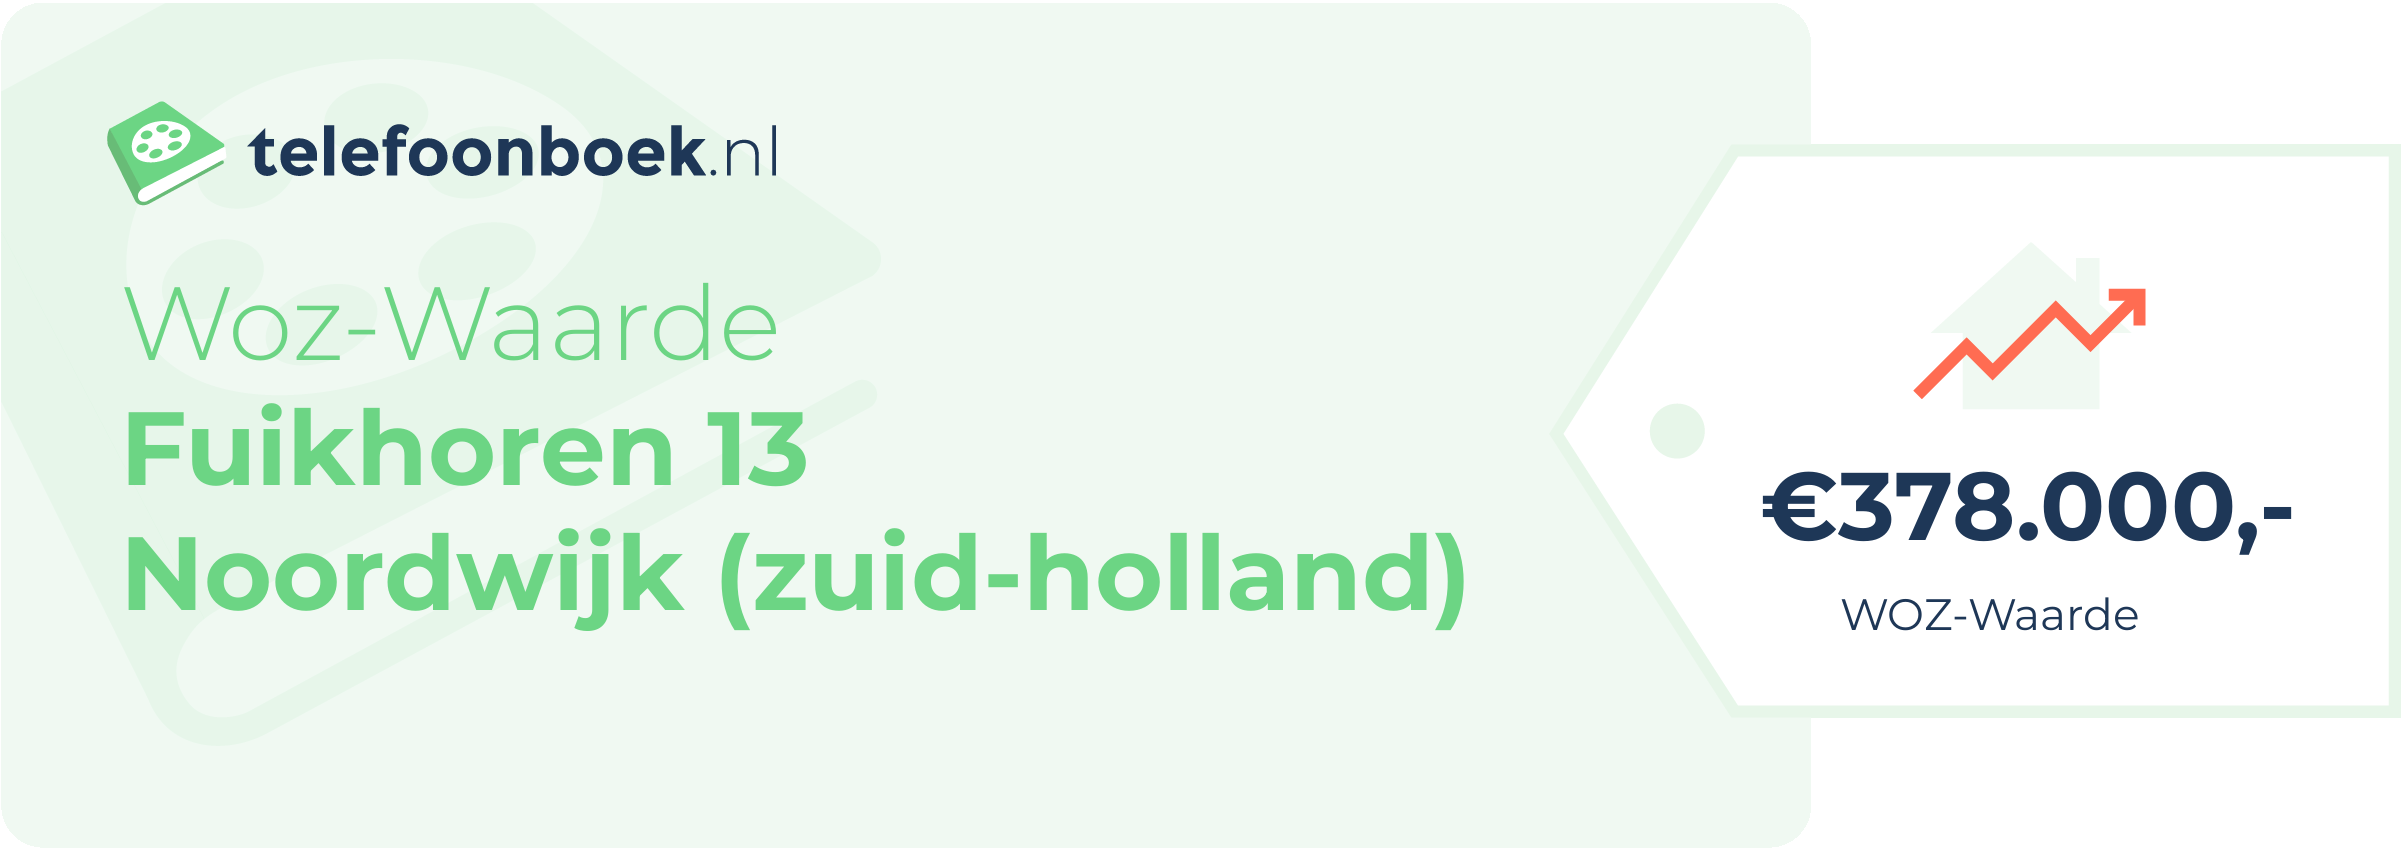 WOZ-waarde Fuikhoren 13 Noordwijk (Zuid-Holland)